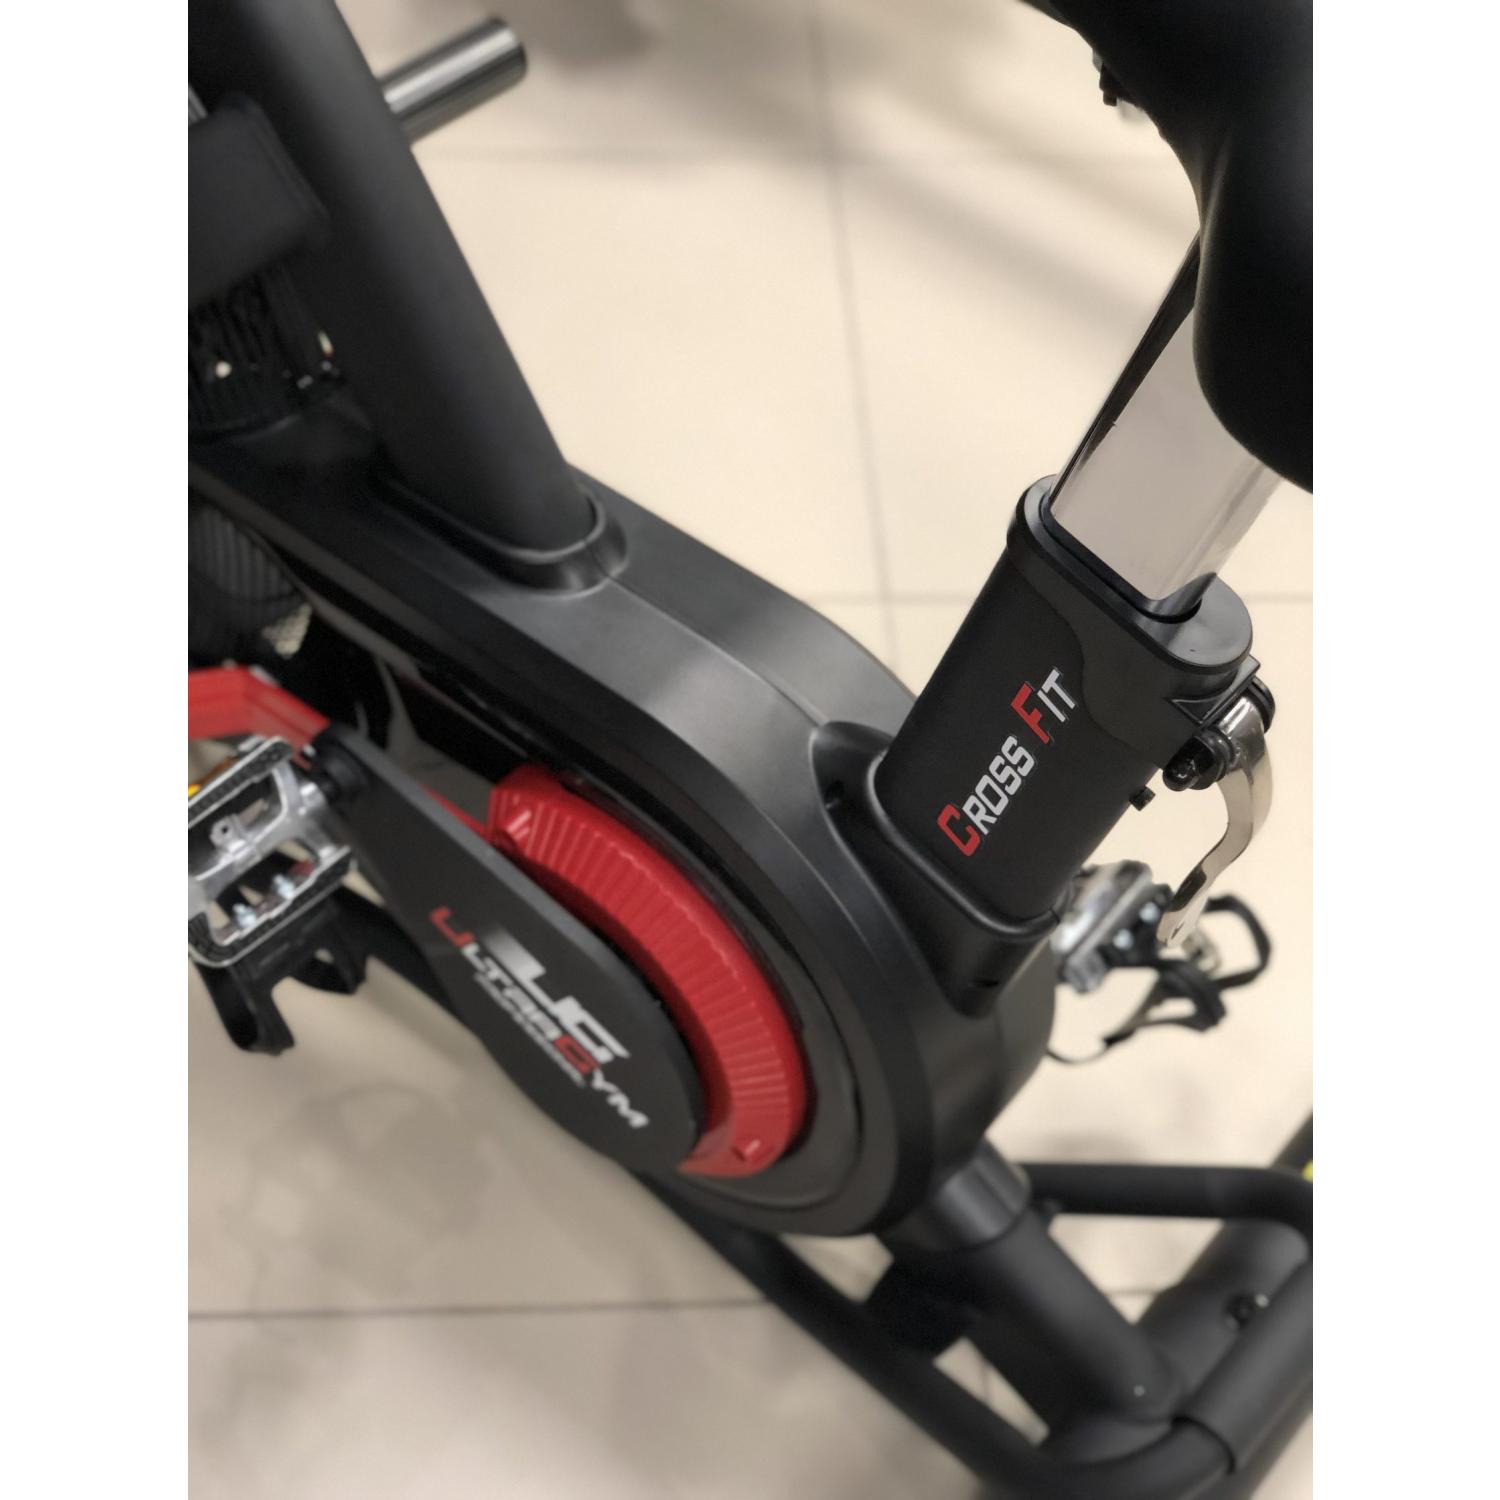 Велобайк UltraGym UG-AB005